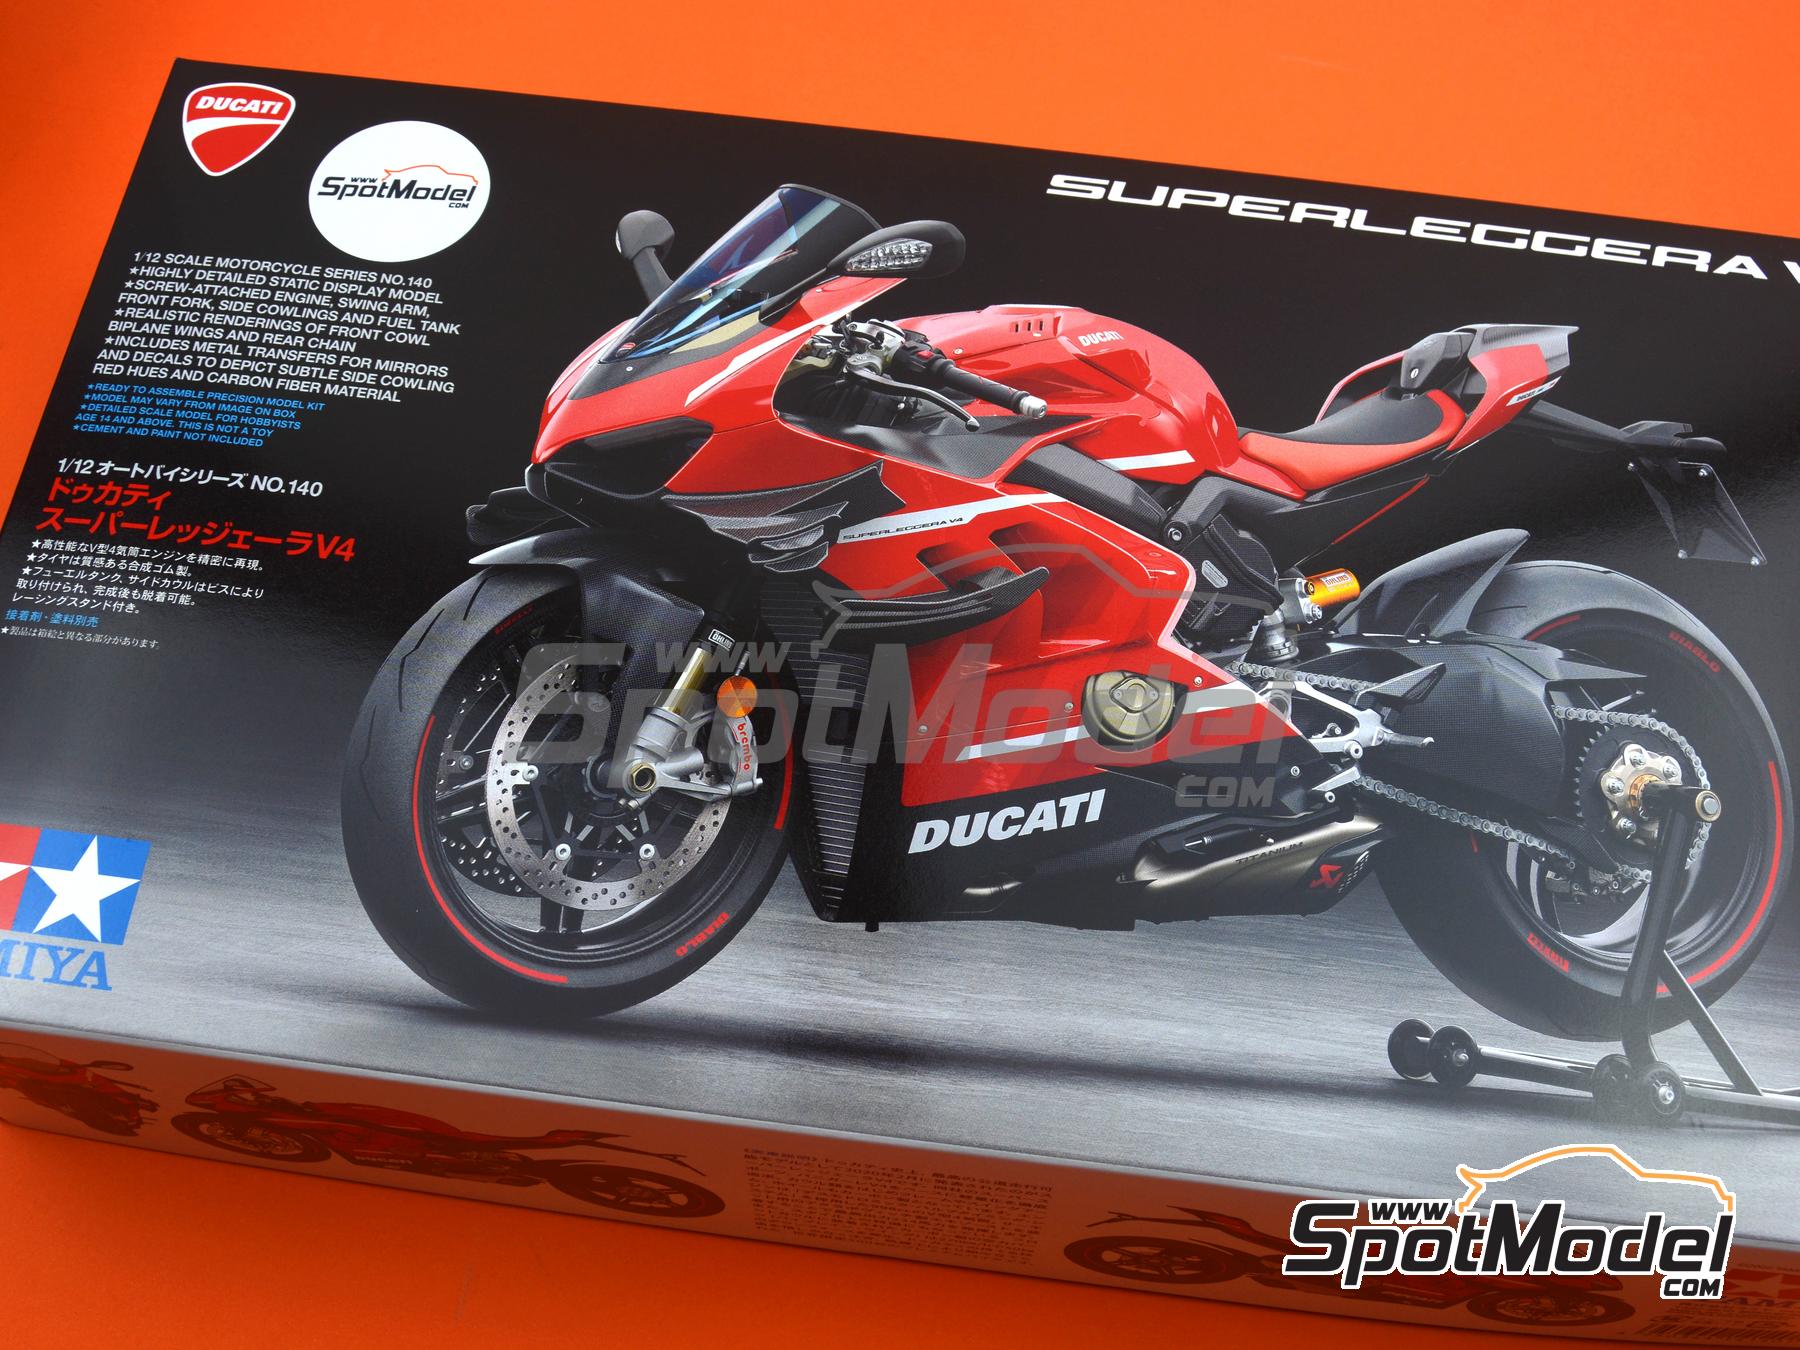 Tamiya 14140 - Maquette moto Ducati Super Leggera 1/12